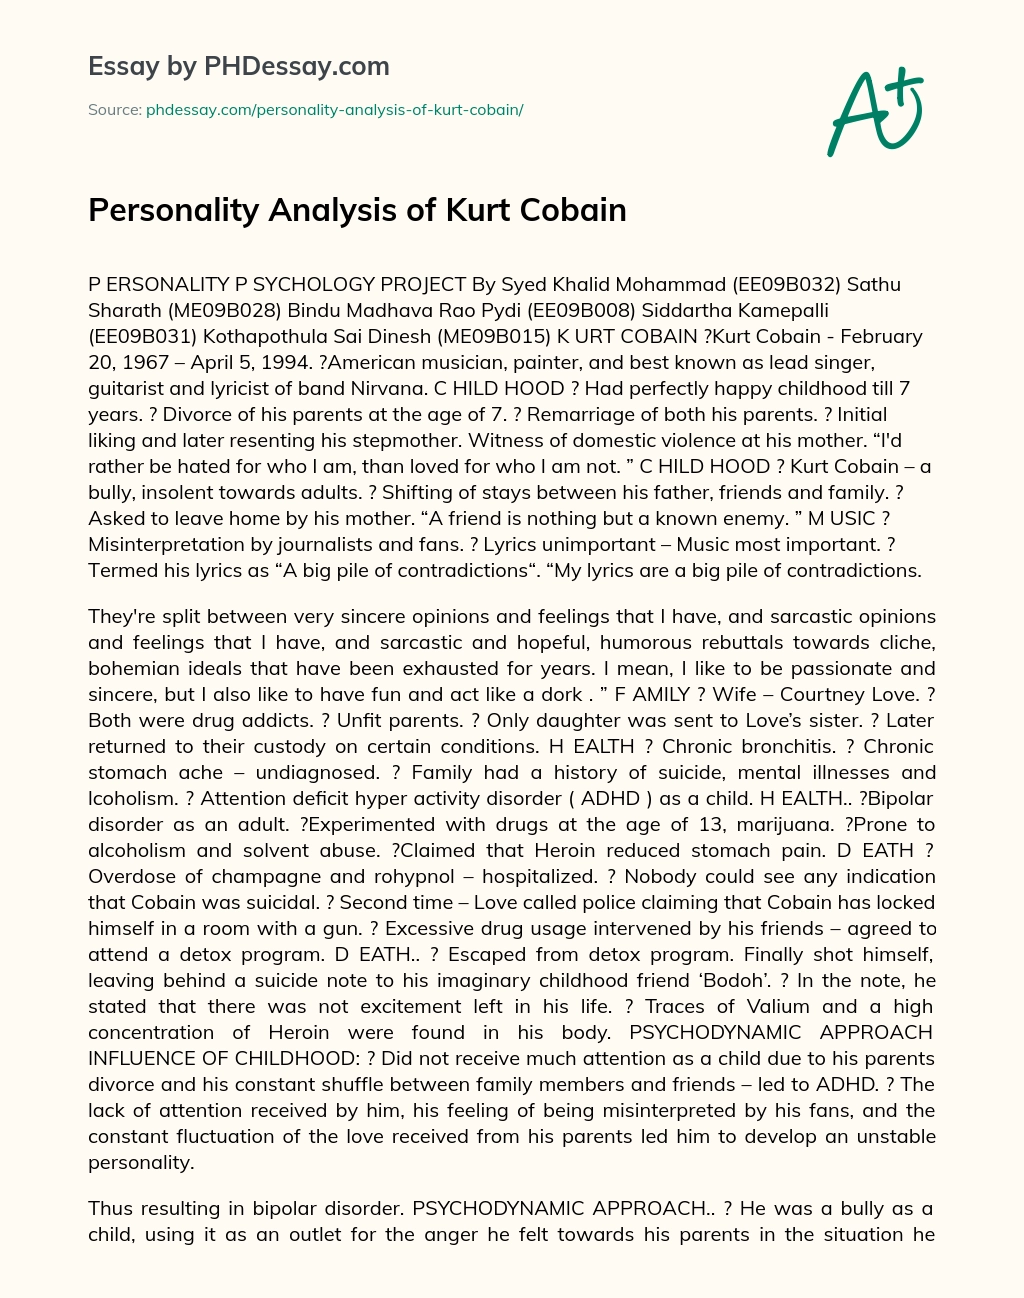 Personality Analysis of Kurt Cobain essay